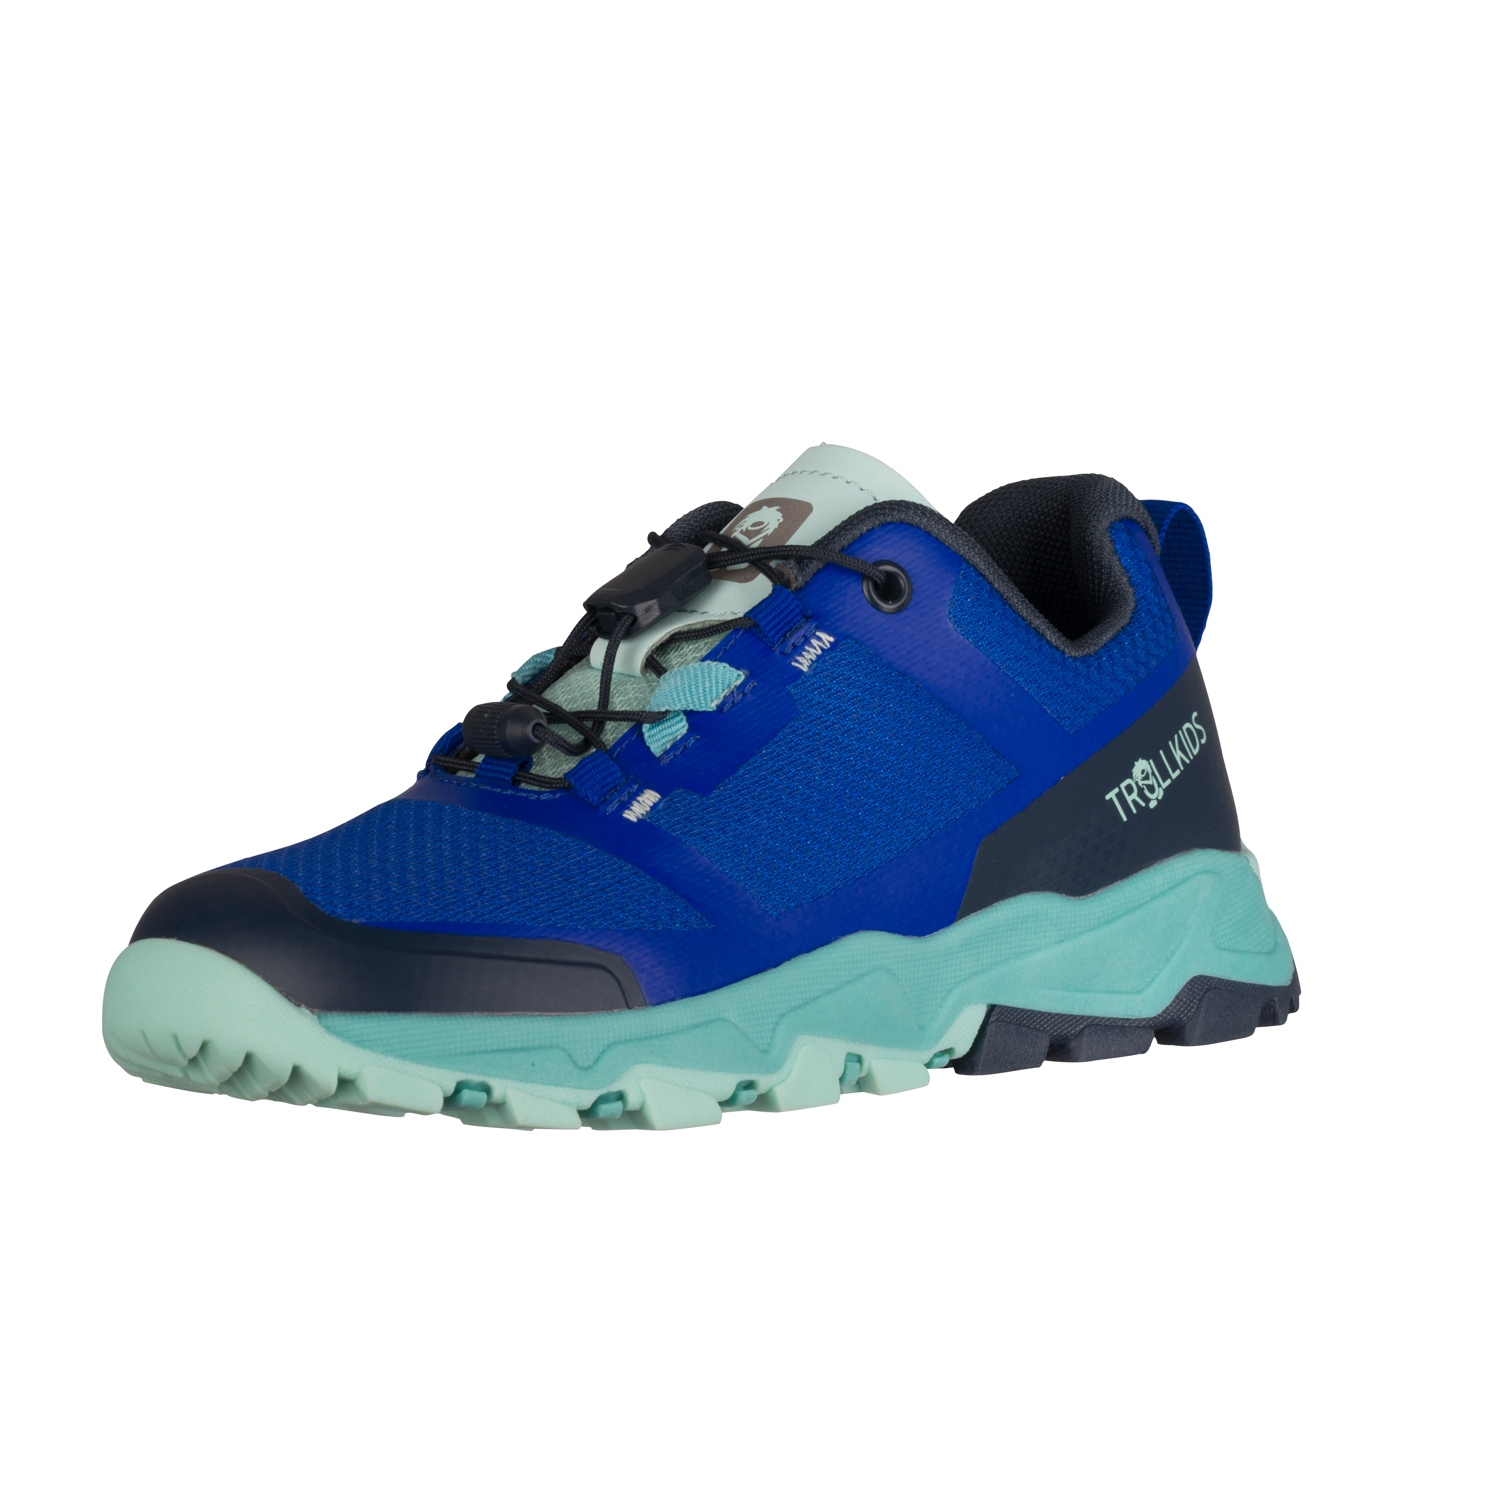 Picture of Trollkids Sandefjord Hiker XT Shoes Kids - cobalt blue/dark navy/dusky turquoise